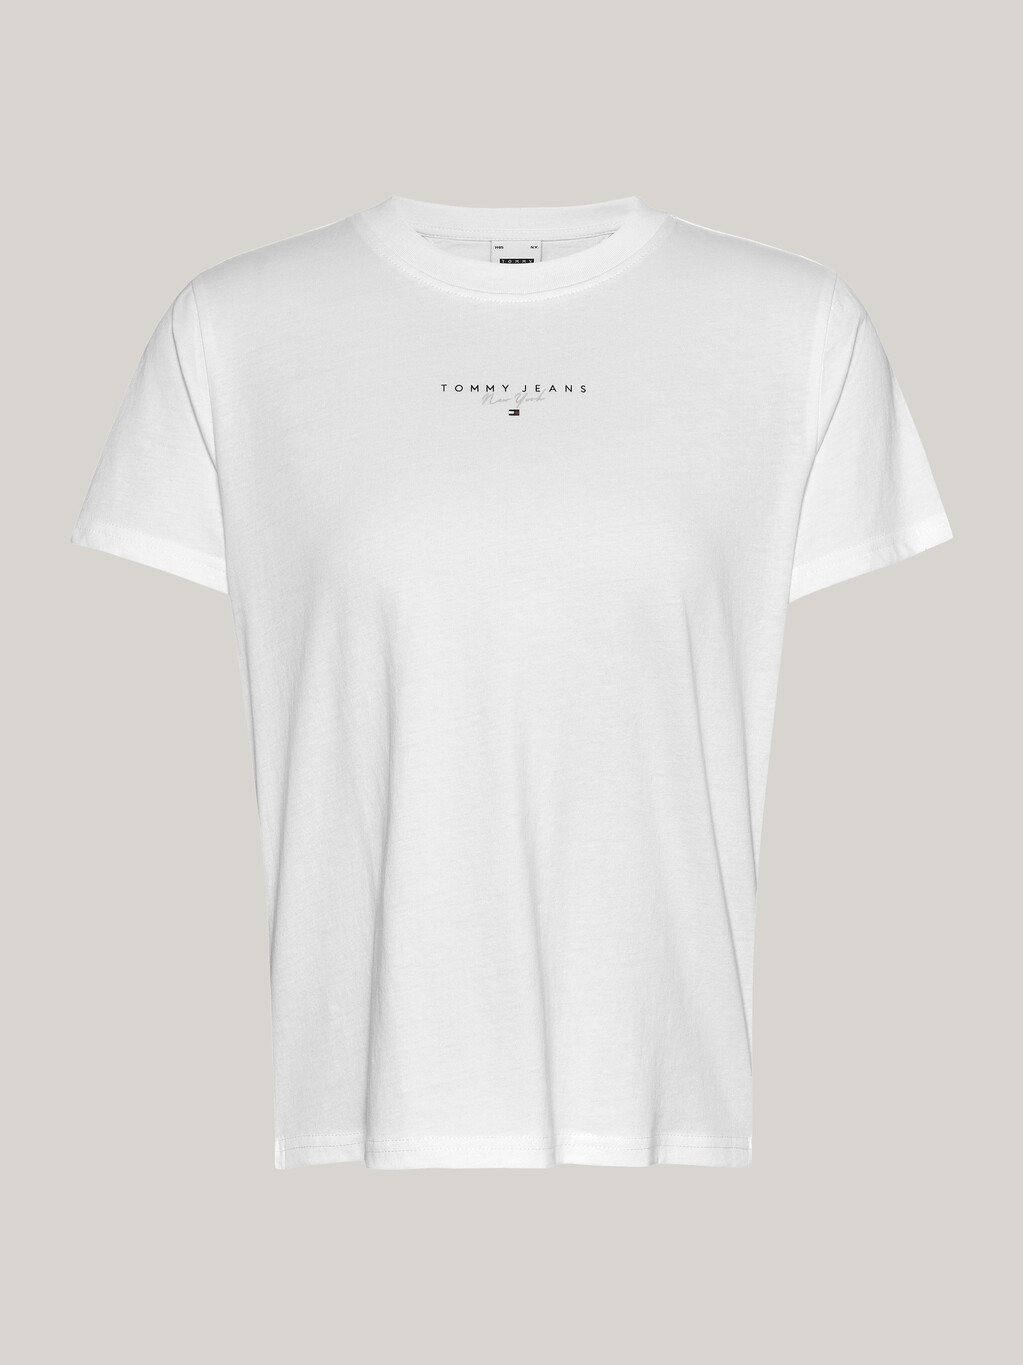 Essential 基本款標誌 T 恤, White, hi-res